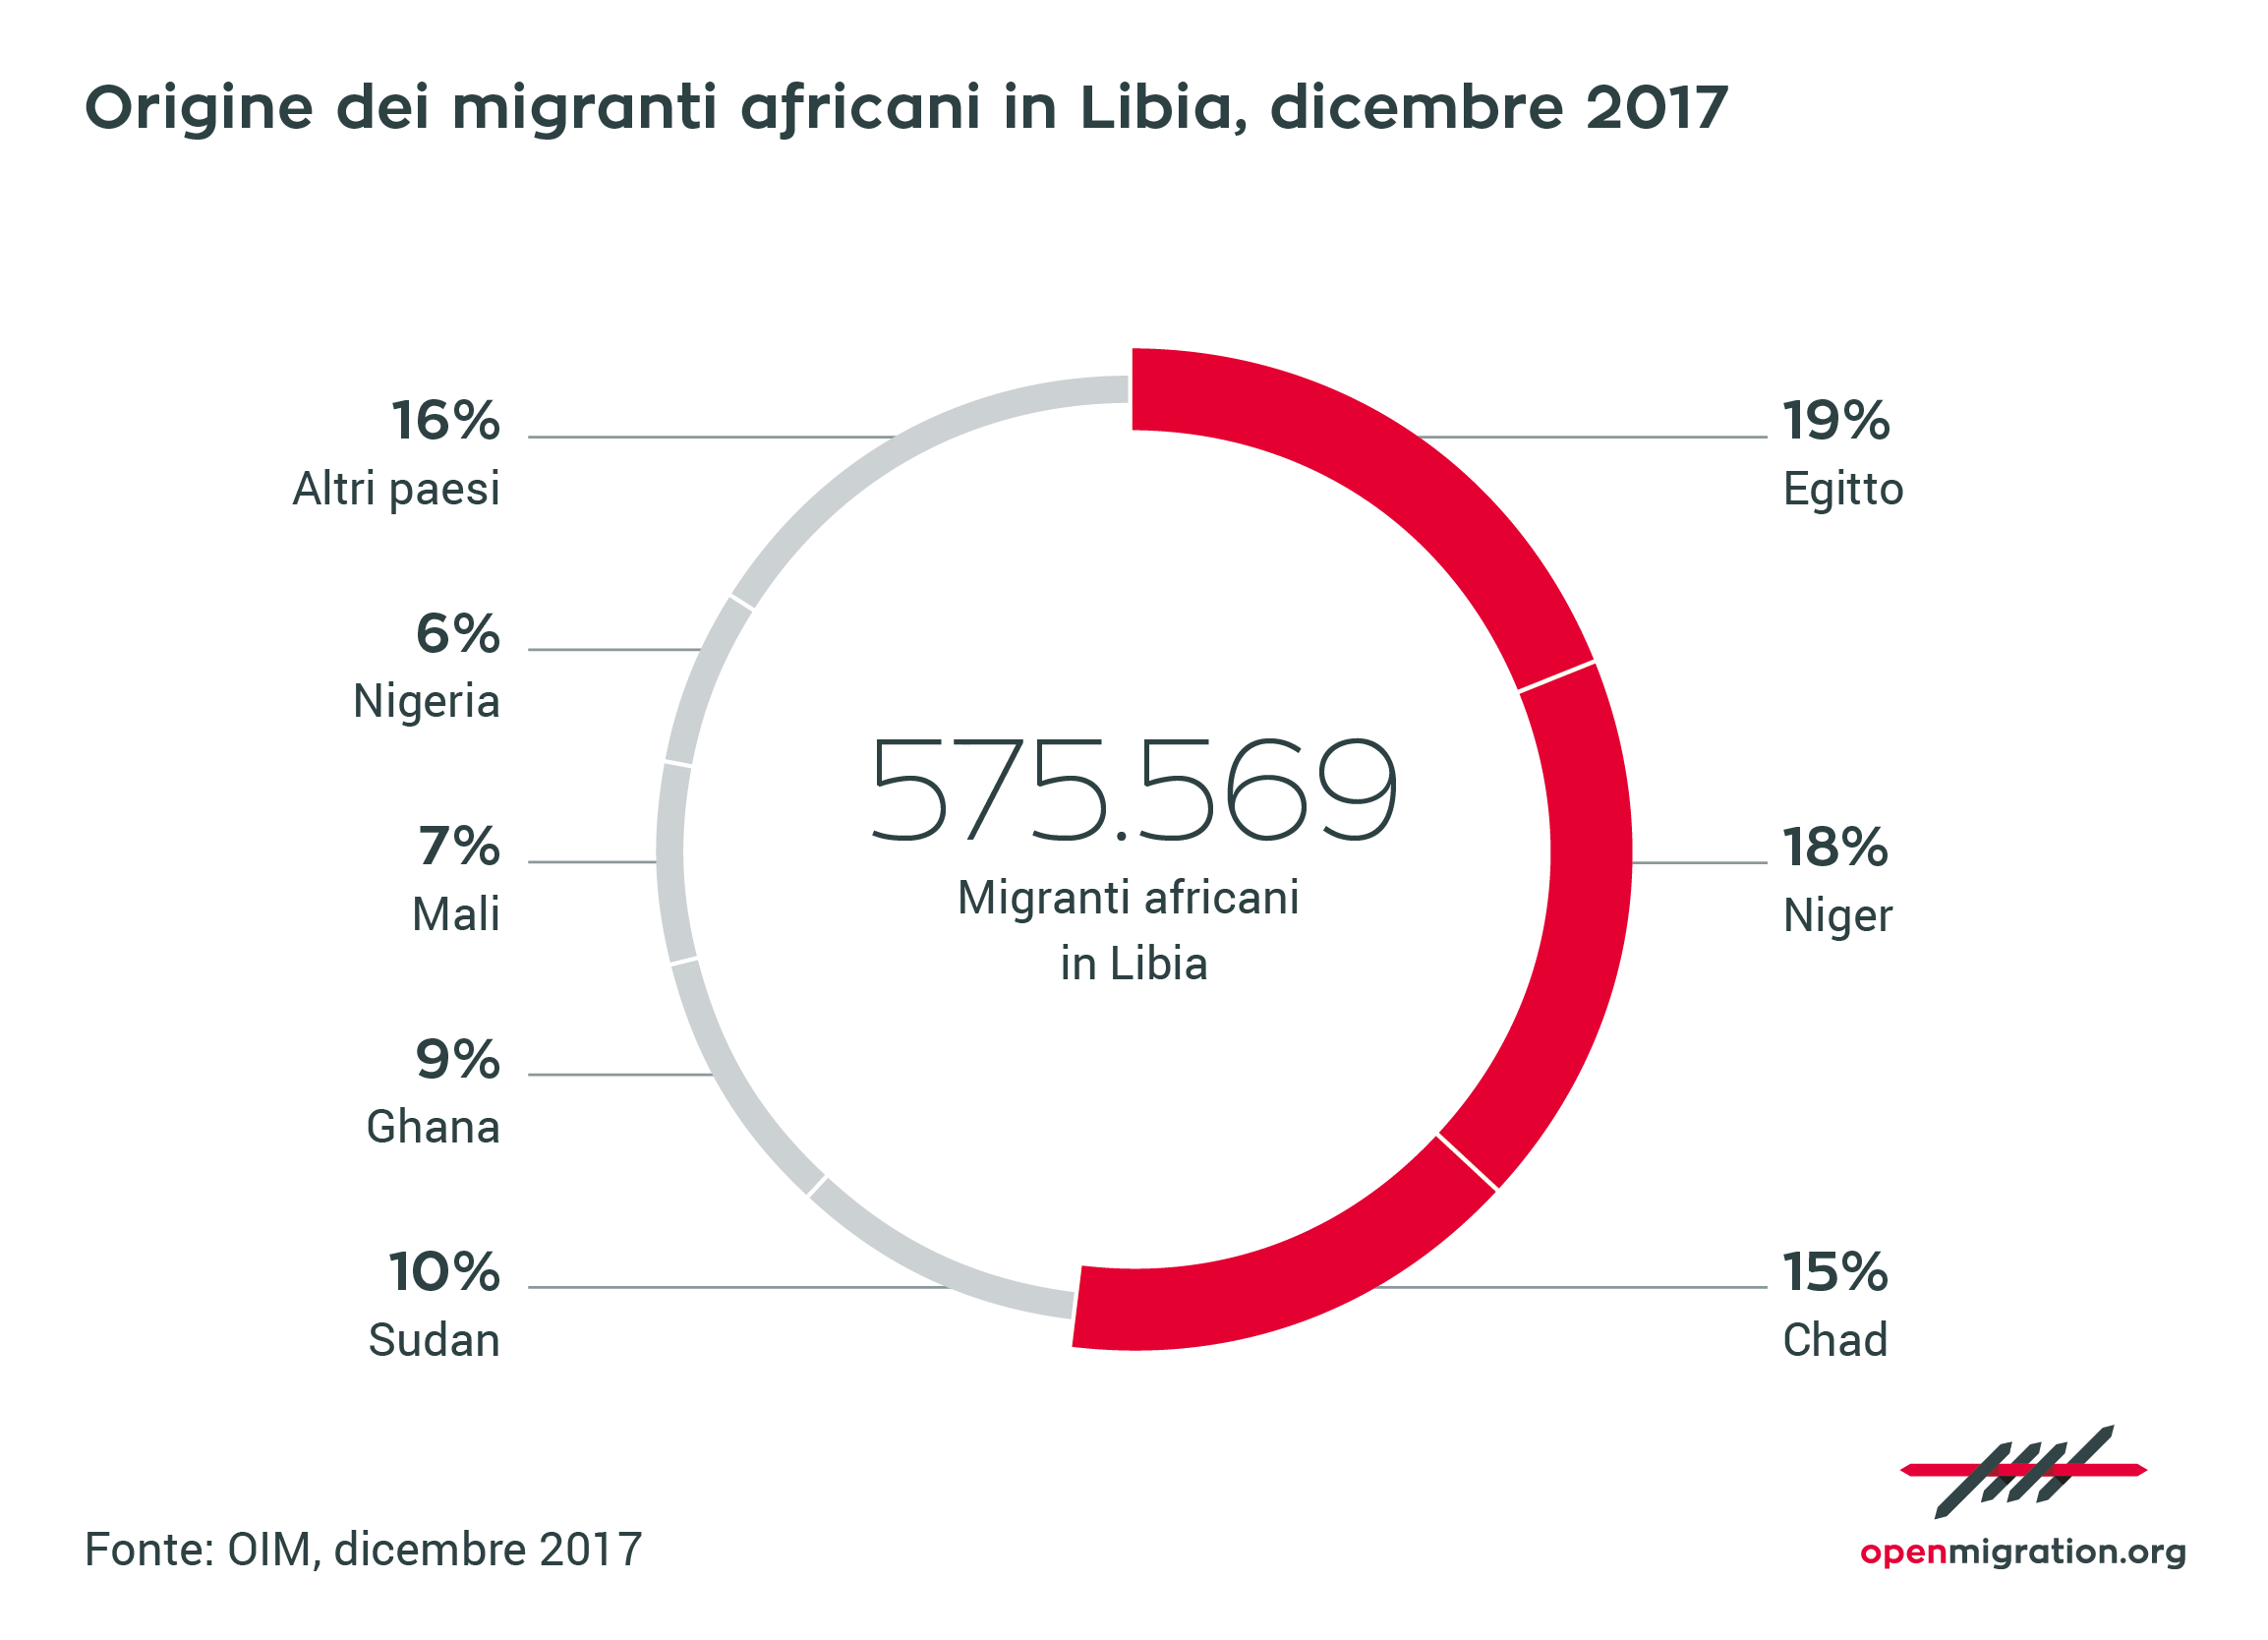 Origine dei migranti africani in Libia, dicembre 2017